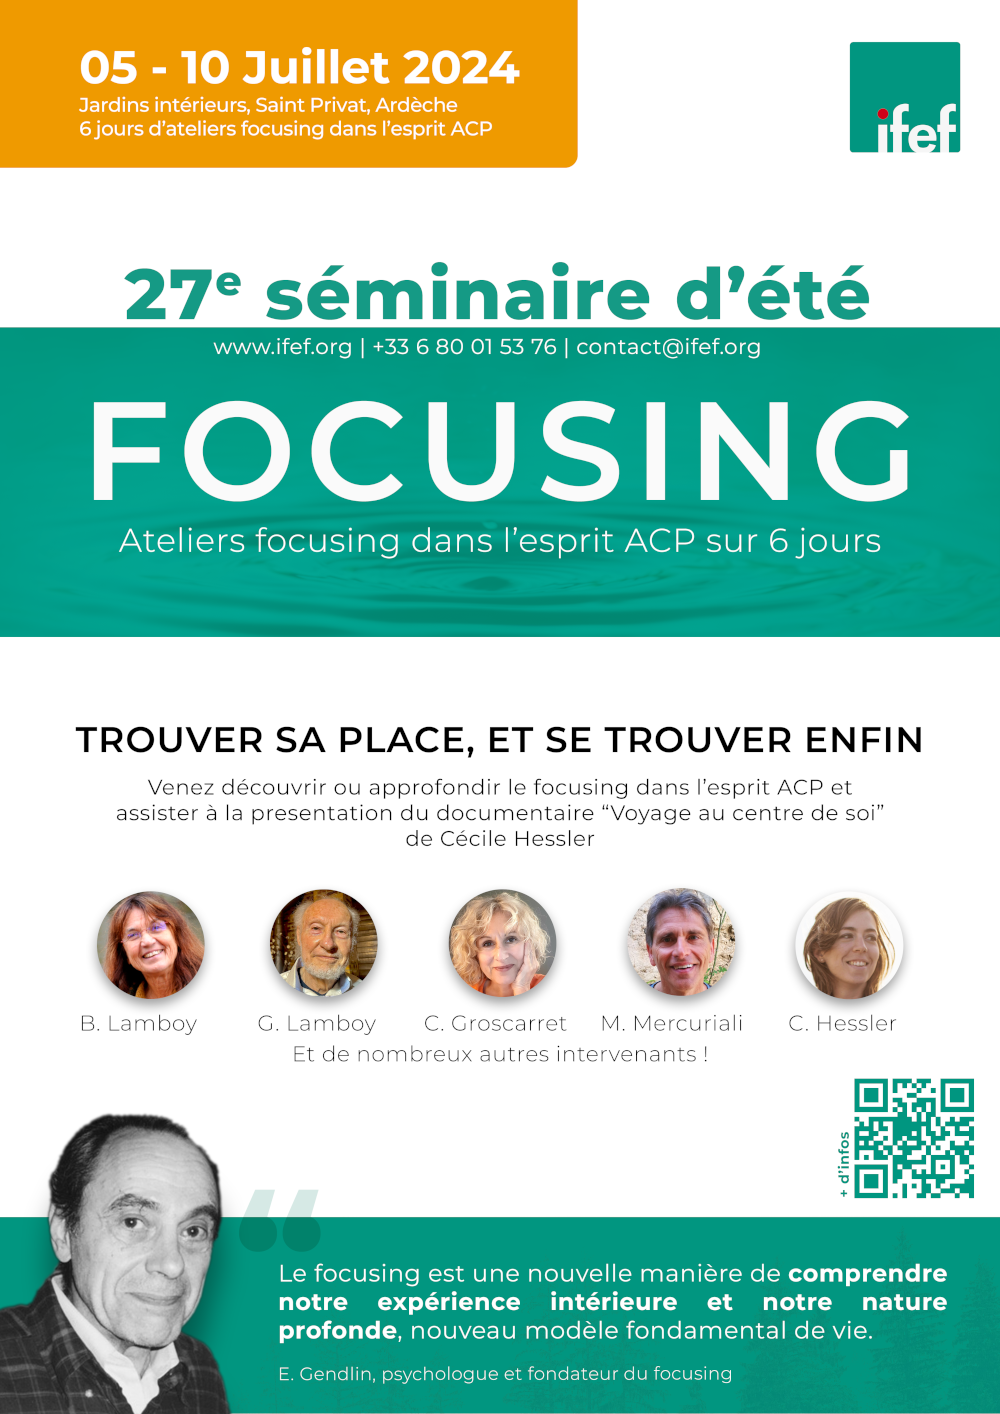 Affiche du séminaire d'été de focusing 2024 en Ardèche : trouver sa place et se trouver enfin